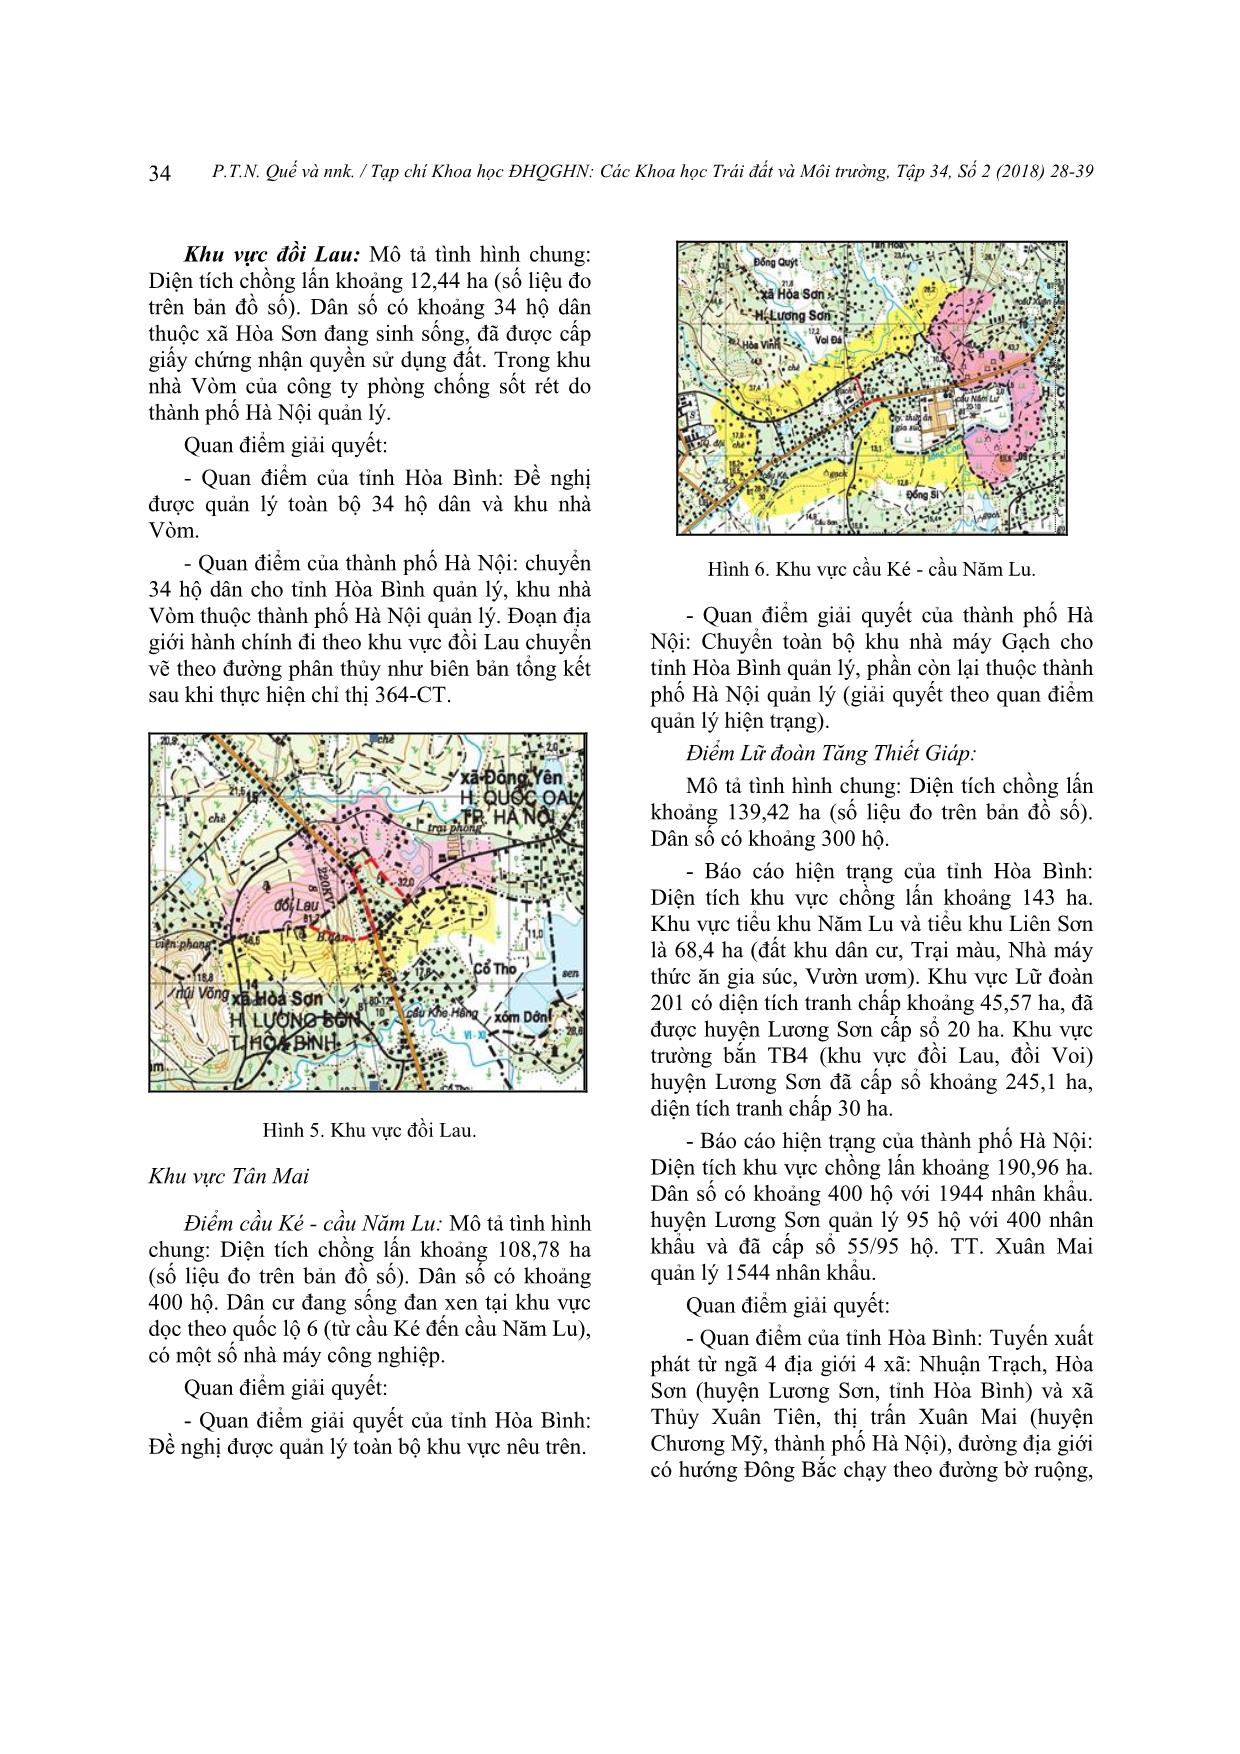 Nghiên cứu phương thức giải quyết tranh chấp đất đai liên quan đến địa giới hành chính khu vực giáp ranh giữa thành phố Hà Nội và tỉnh Hòa Bình trang 7